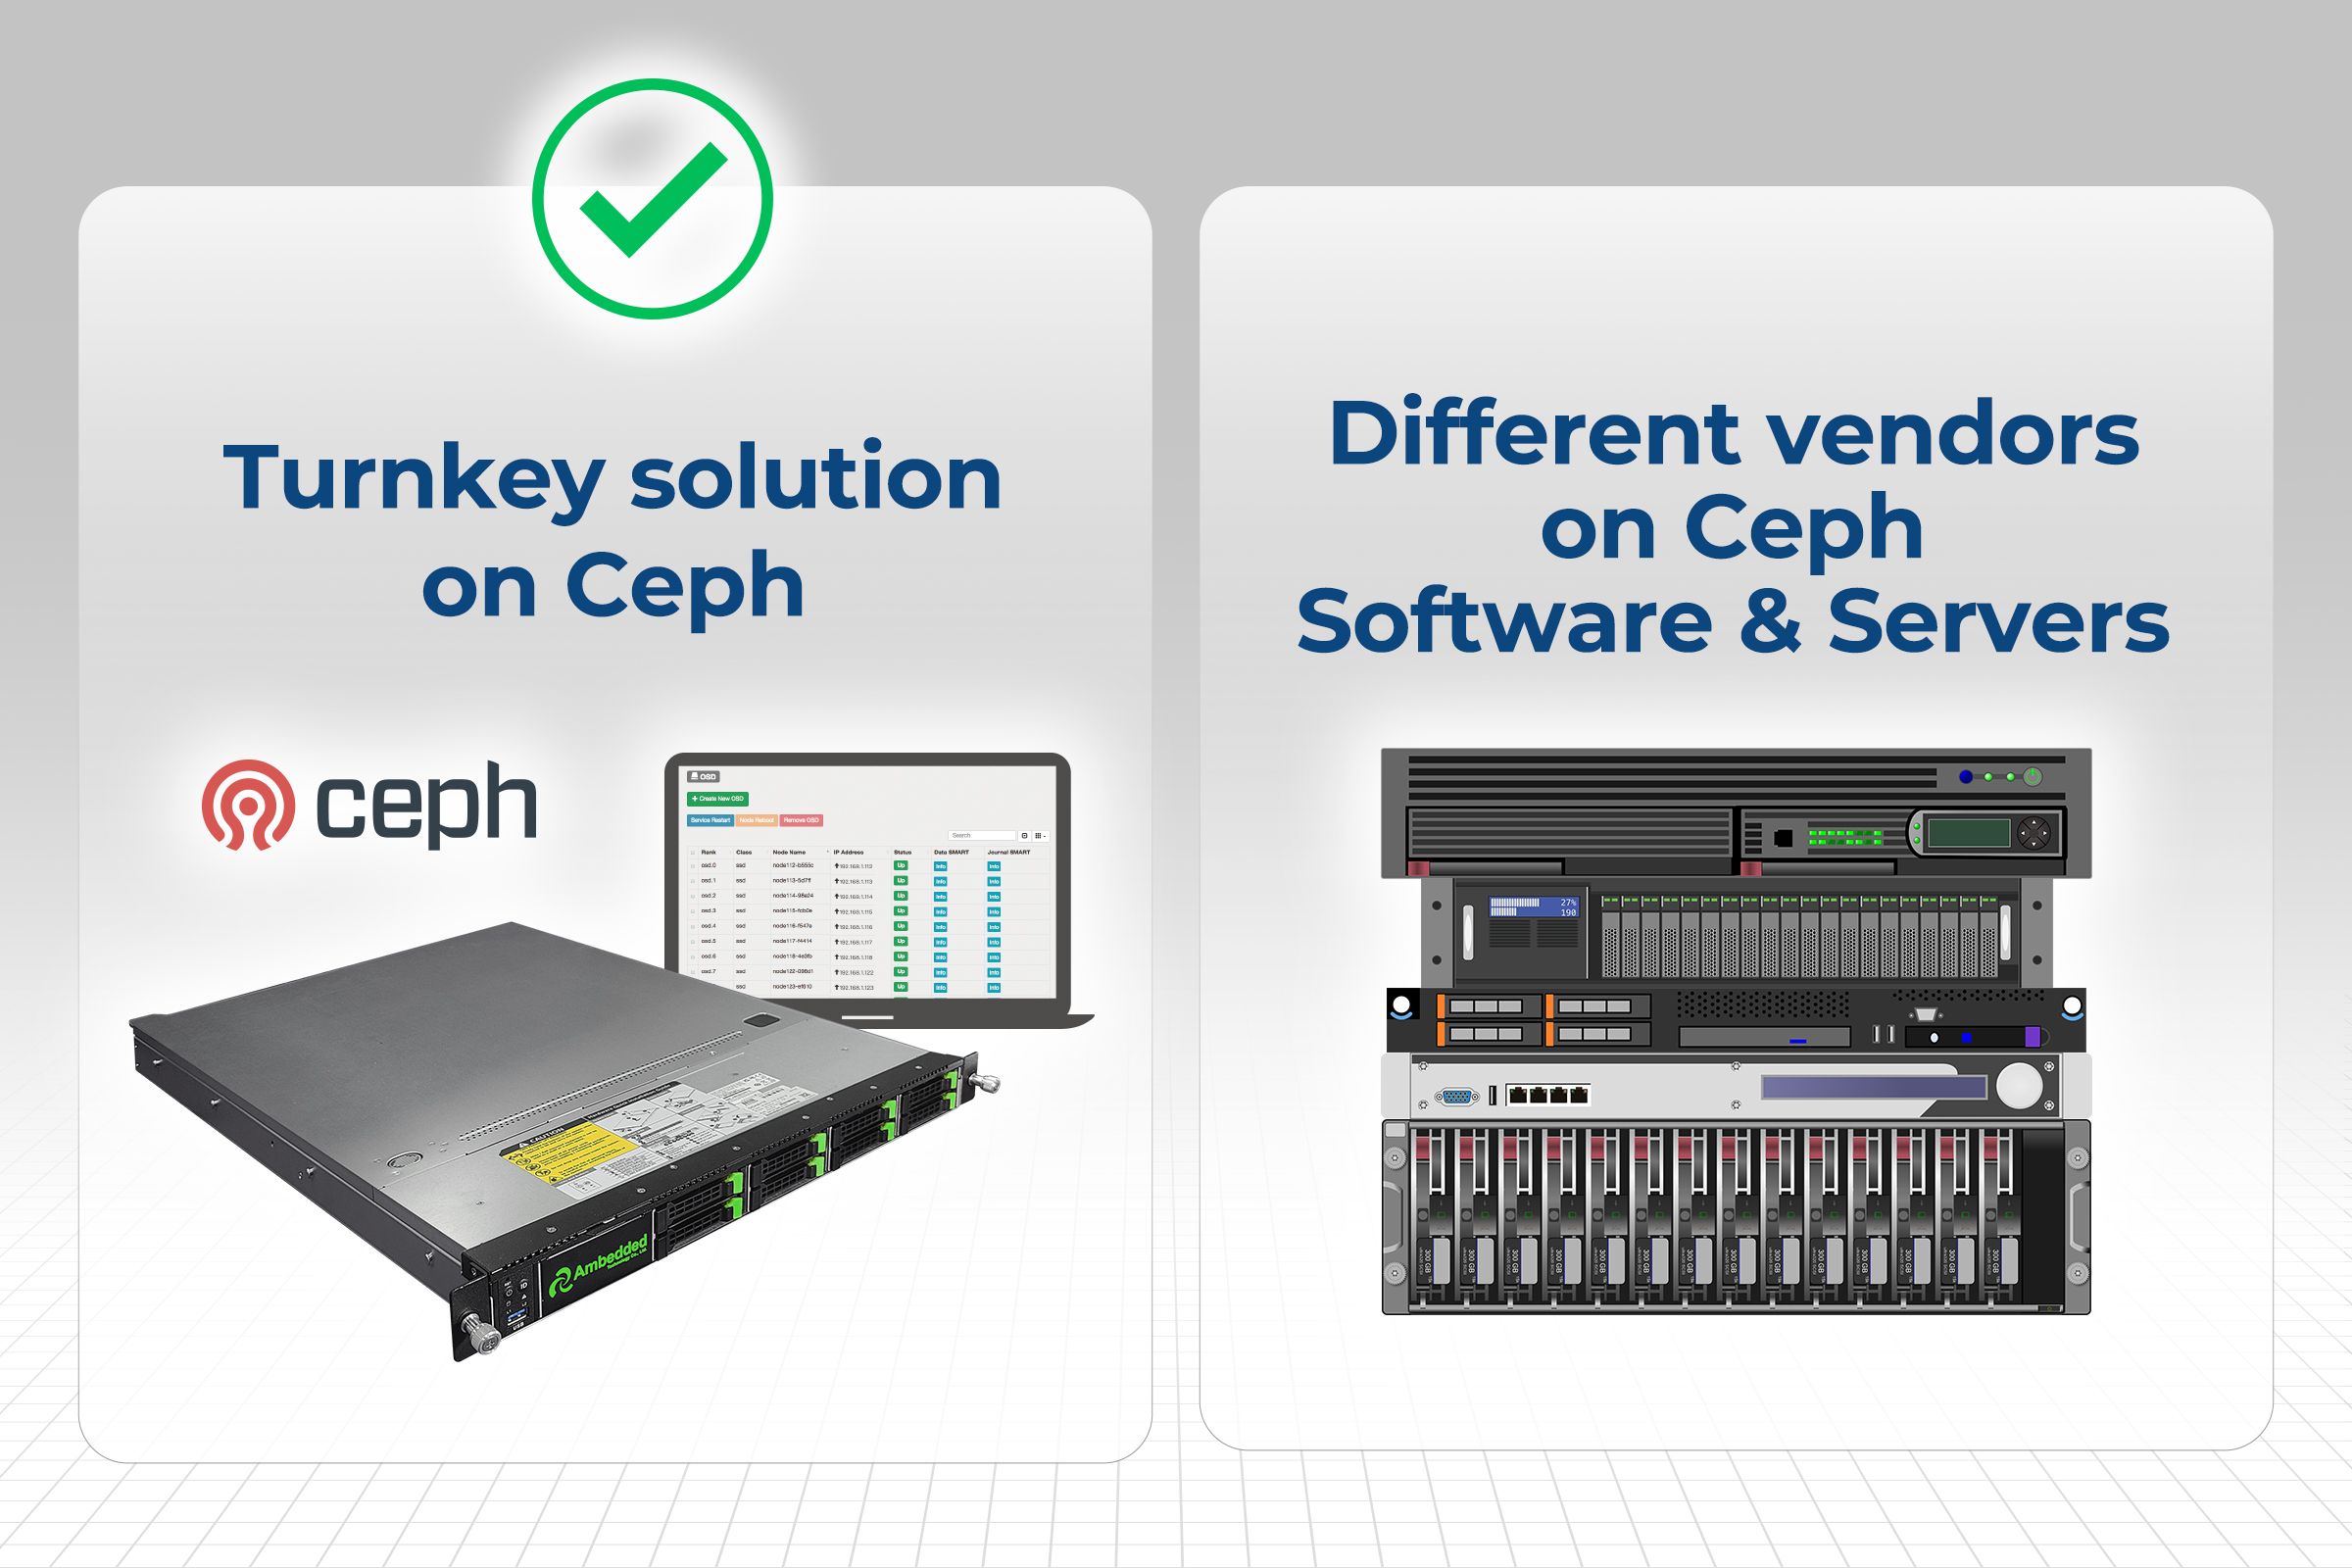 Причина, почему готовое решение Ceph (аппаратное обеспечение Ceph) является лучшим выбором по сравнению с программным решением для работы на различных серверных платформах.